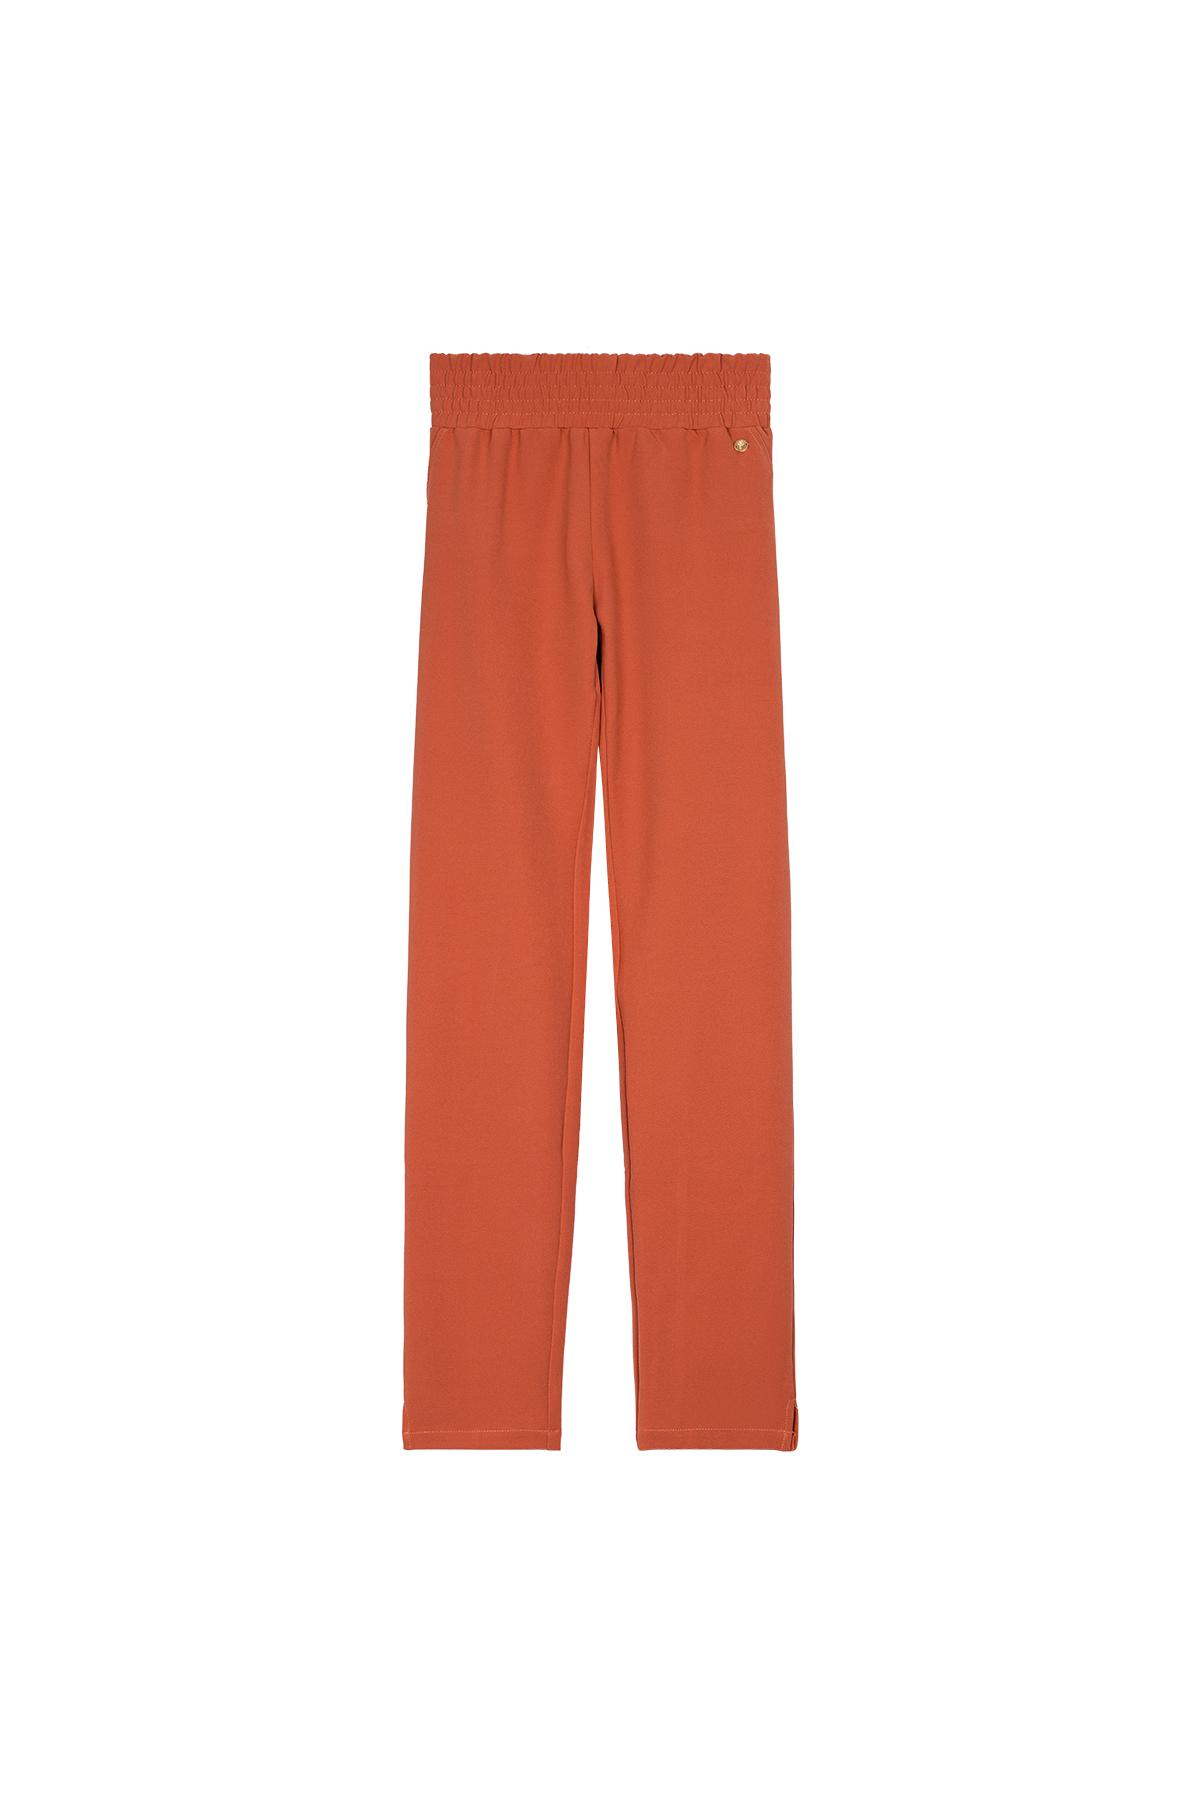 Pantalones ajustados Naranja L